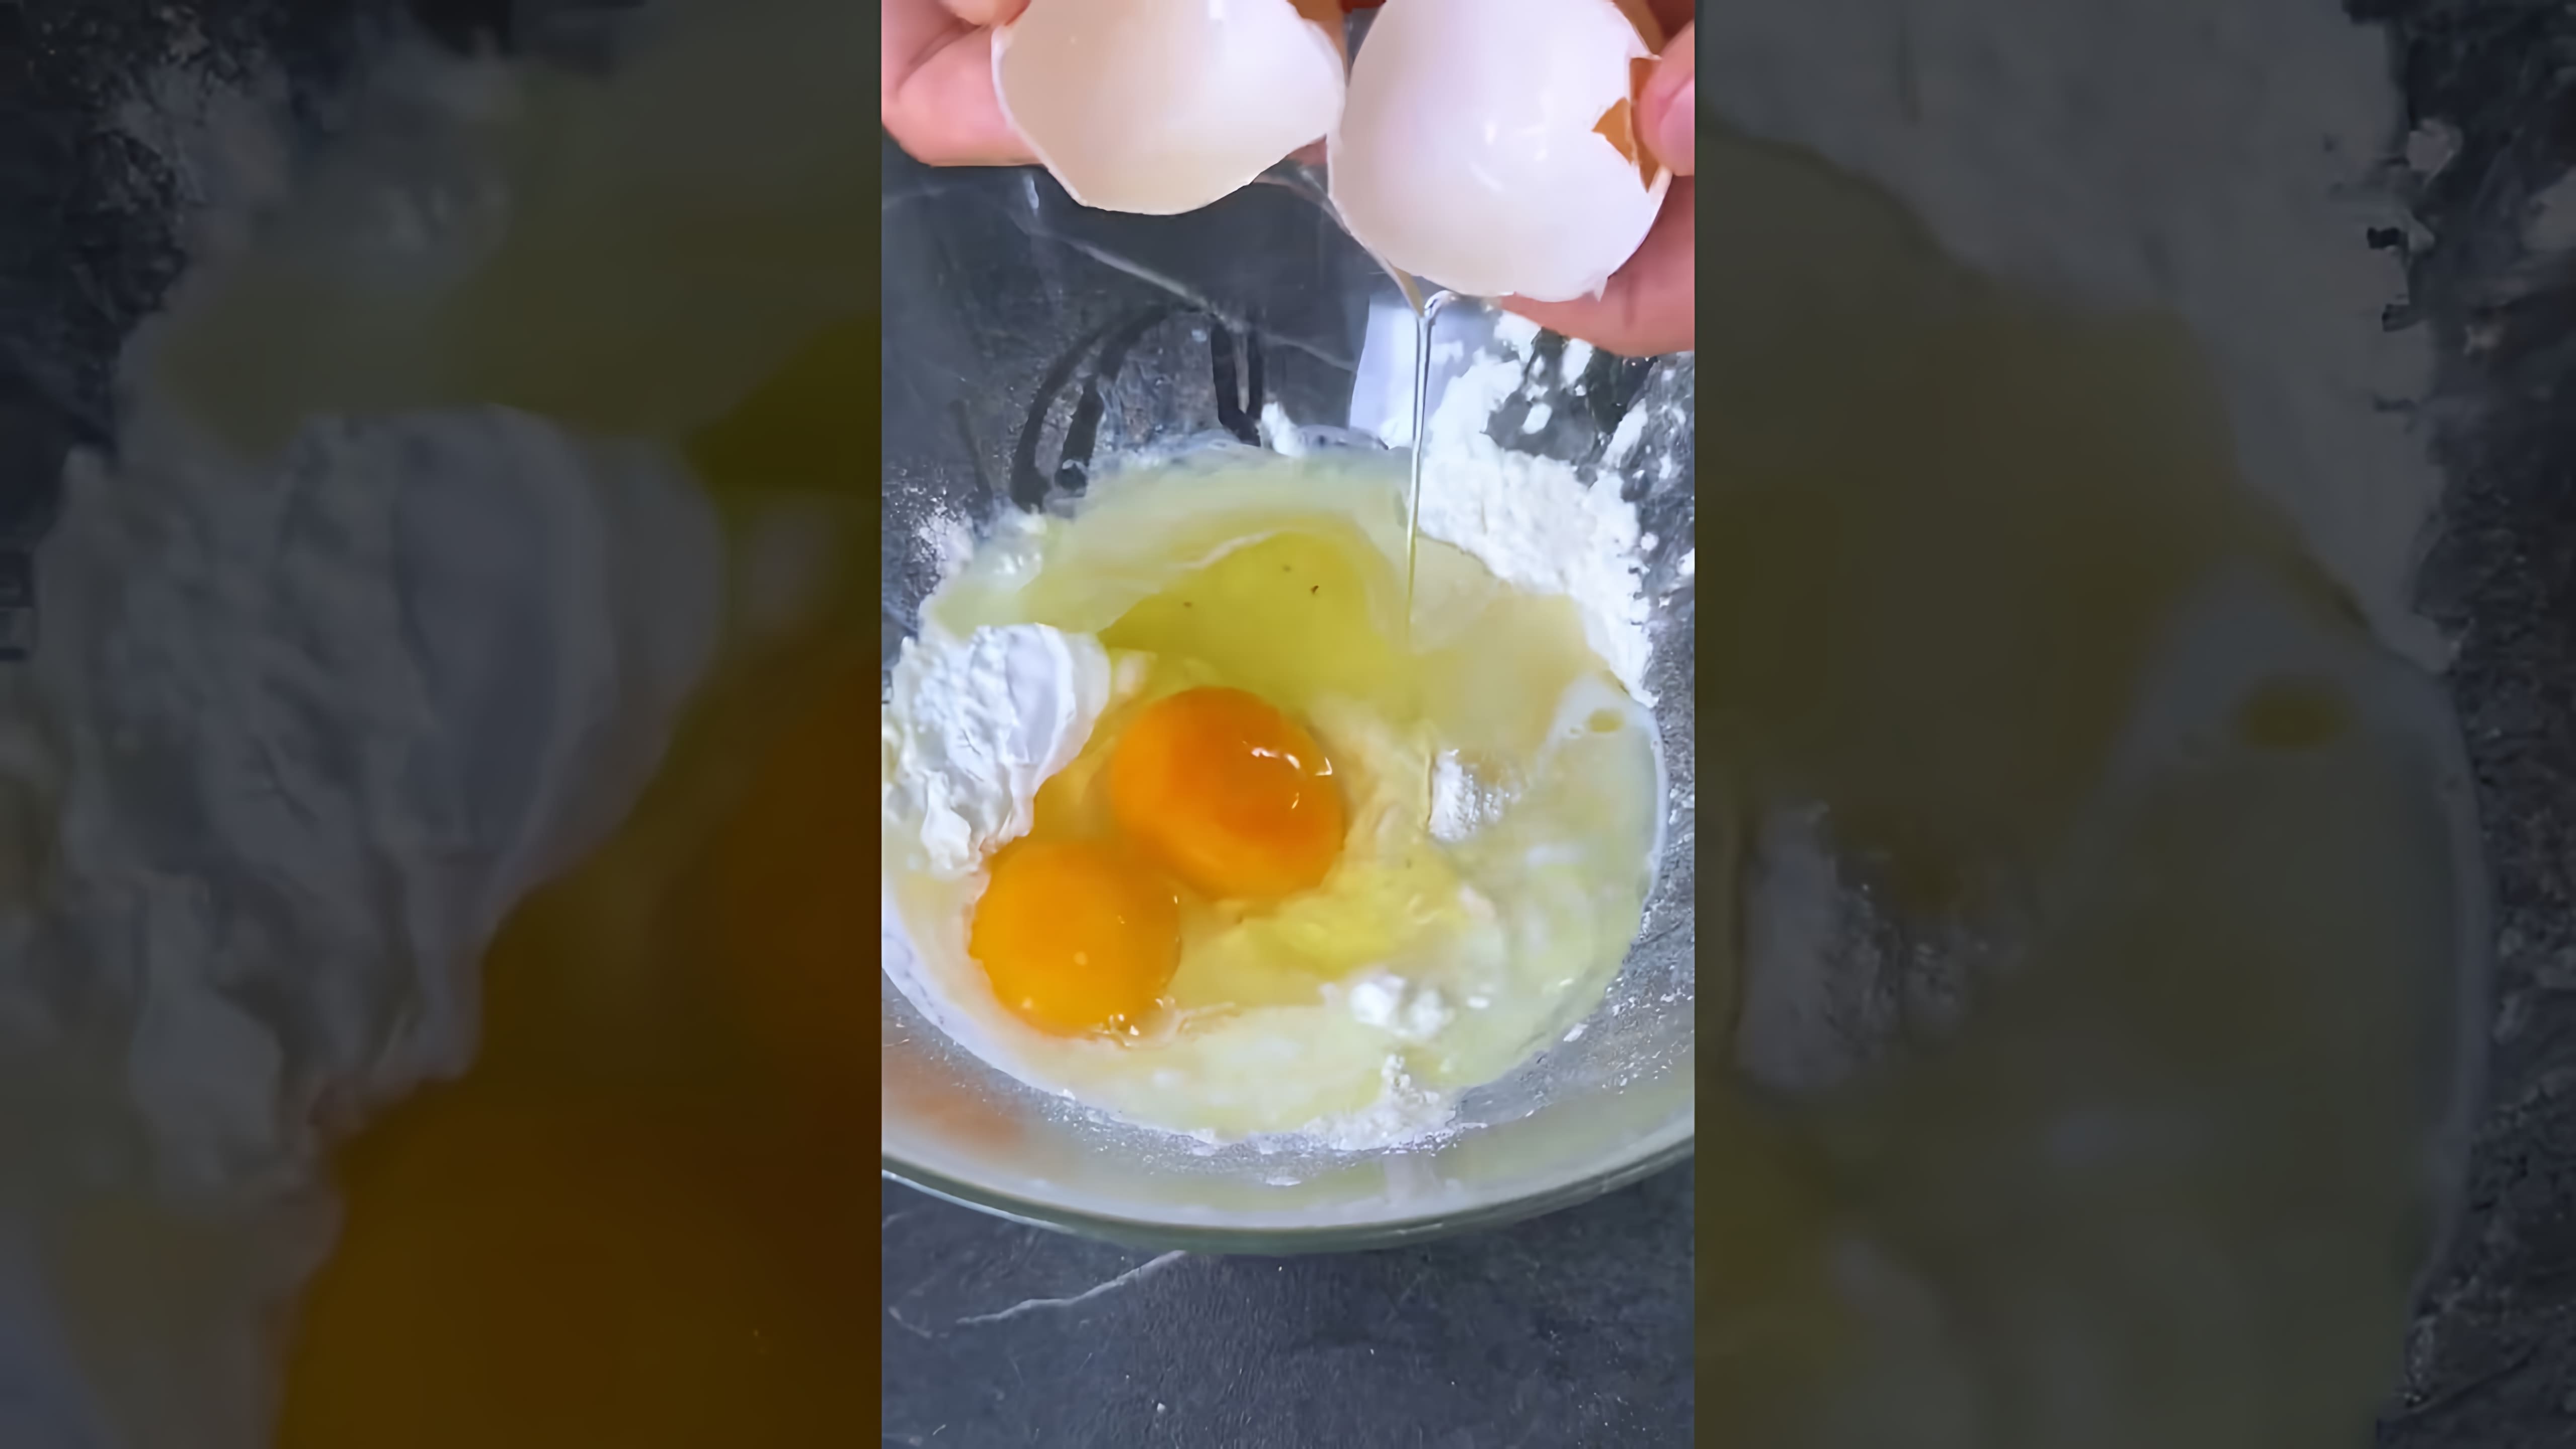 В этом видео демонстрируется процесс приготовления бисквита без использования духовки